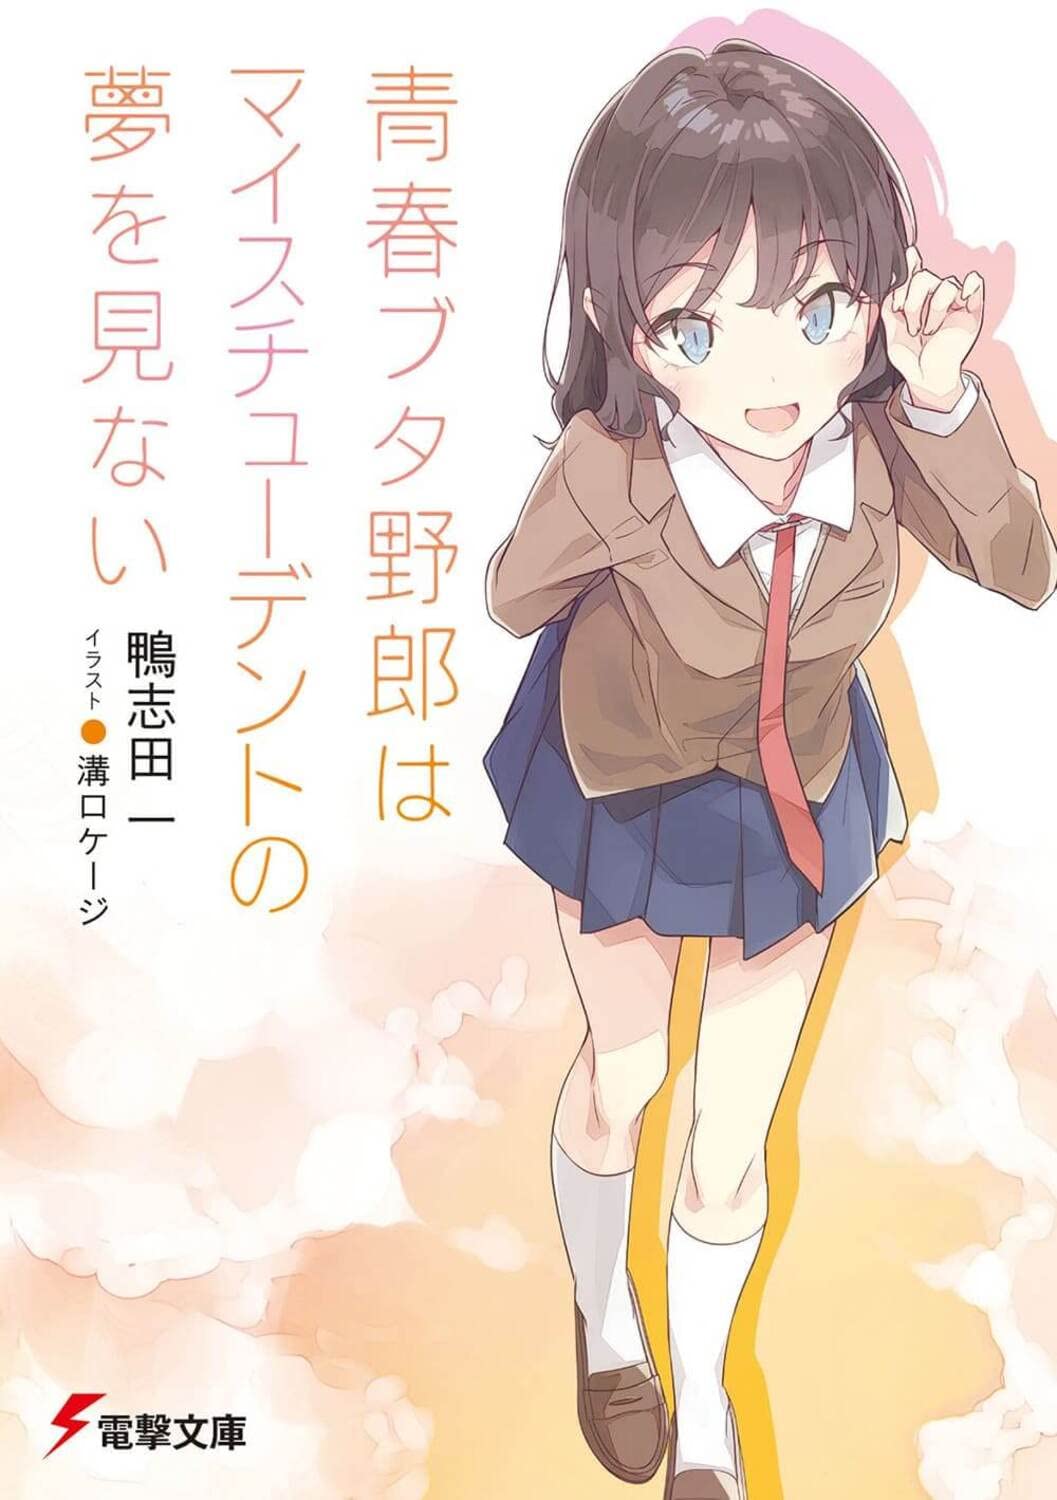 Manga Volume 2  Seishun Buta Yarou wa Bunny Girl Senpai no Yume